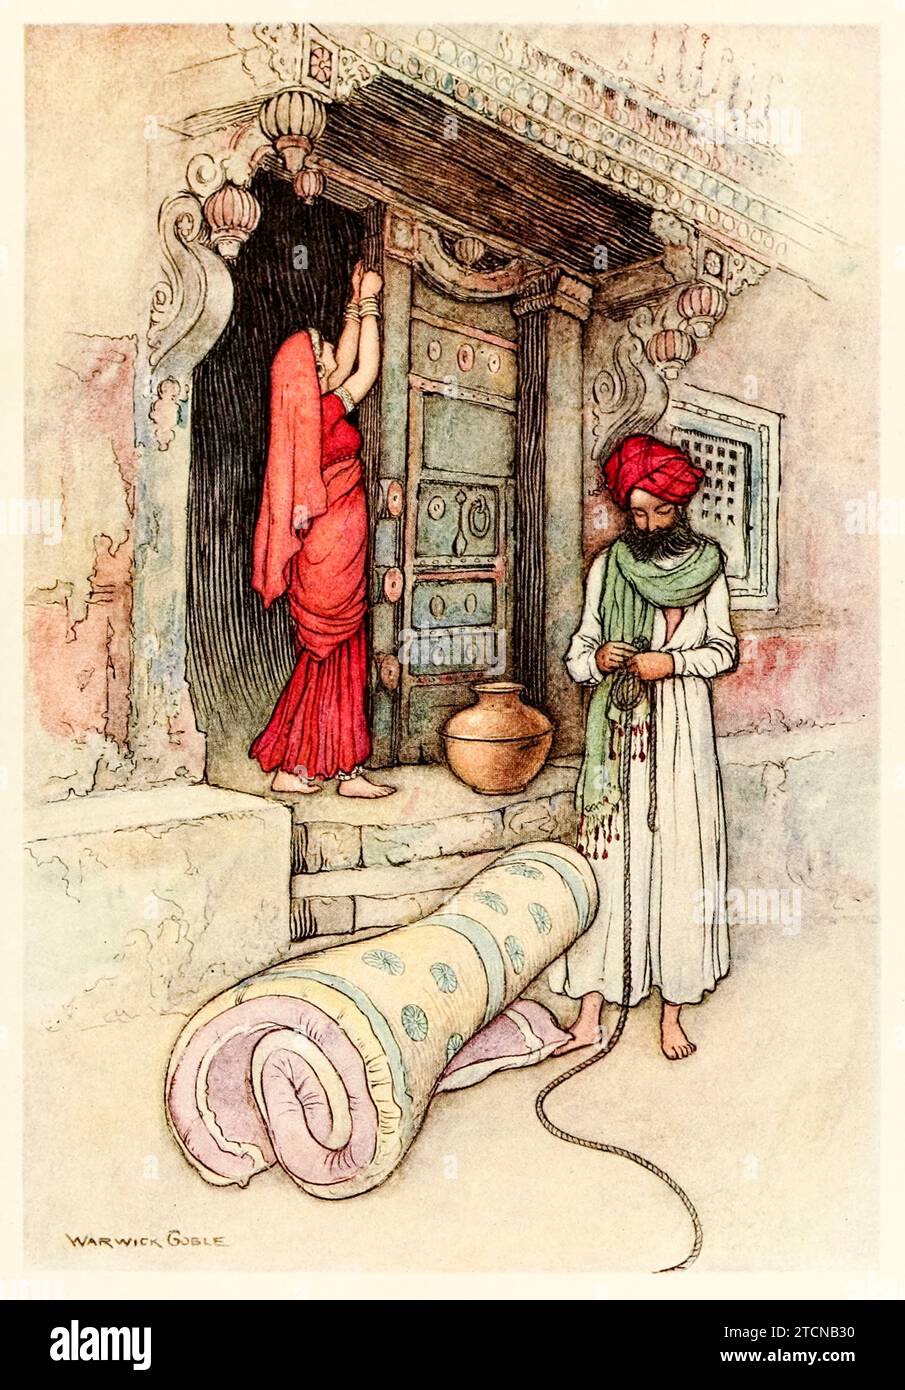 „Dann machen sie sich auf den Weg“ aus „Folk-Tales of Bengal“ von Lal Behari Day (1824-1882), Illustration von Warwick Goble (1862-1972). Foto aus einer Ausgabe von 1912. Kredit: Privatsammlung / AF Fotografie Stockfoto